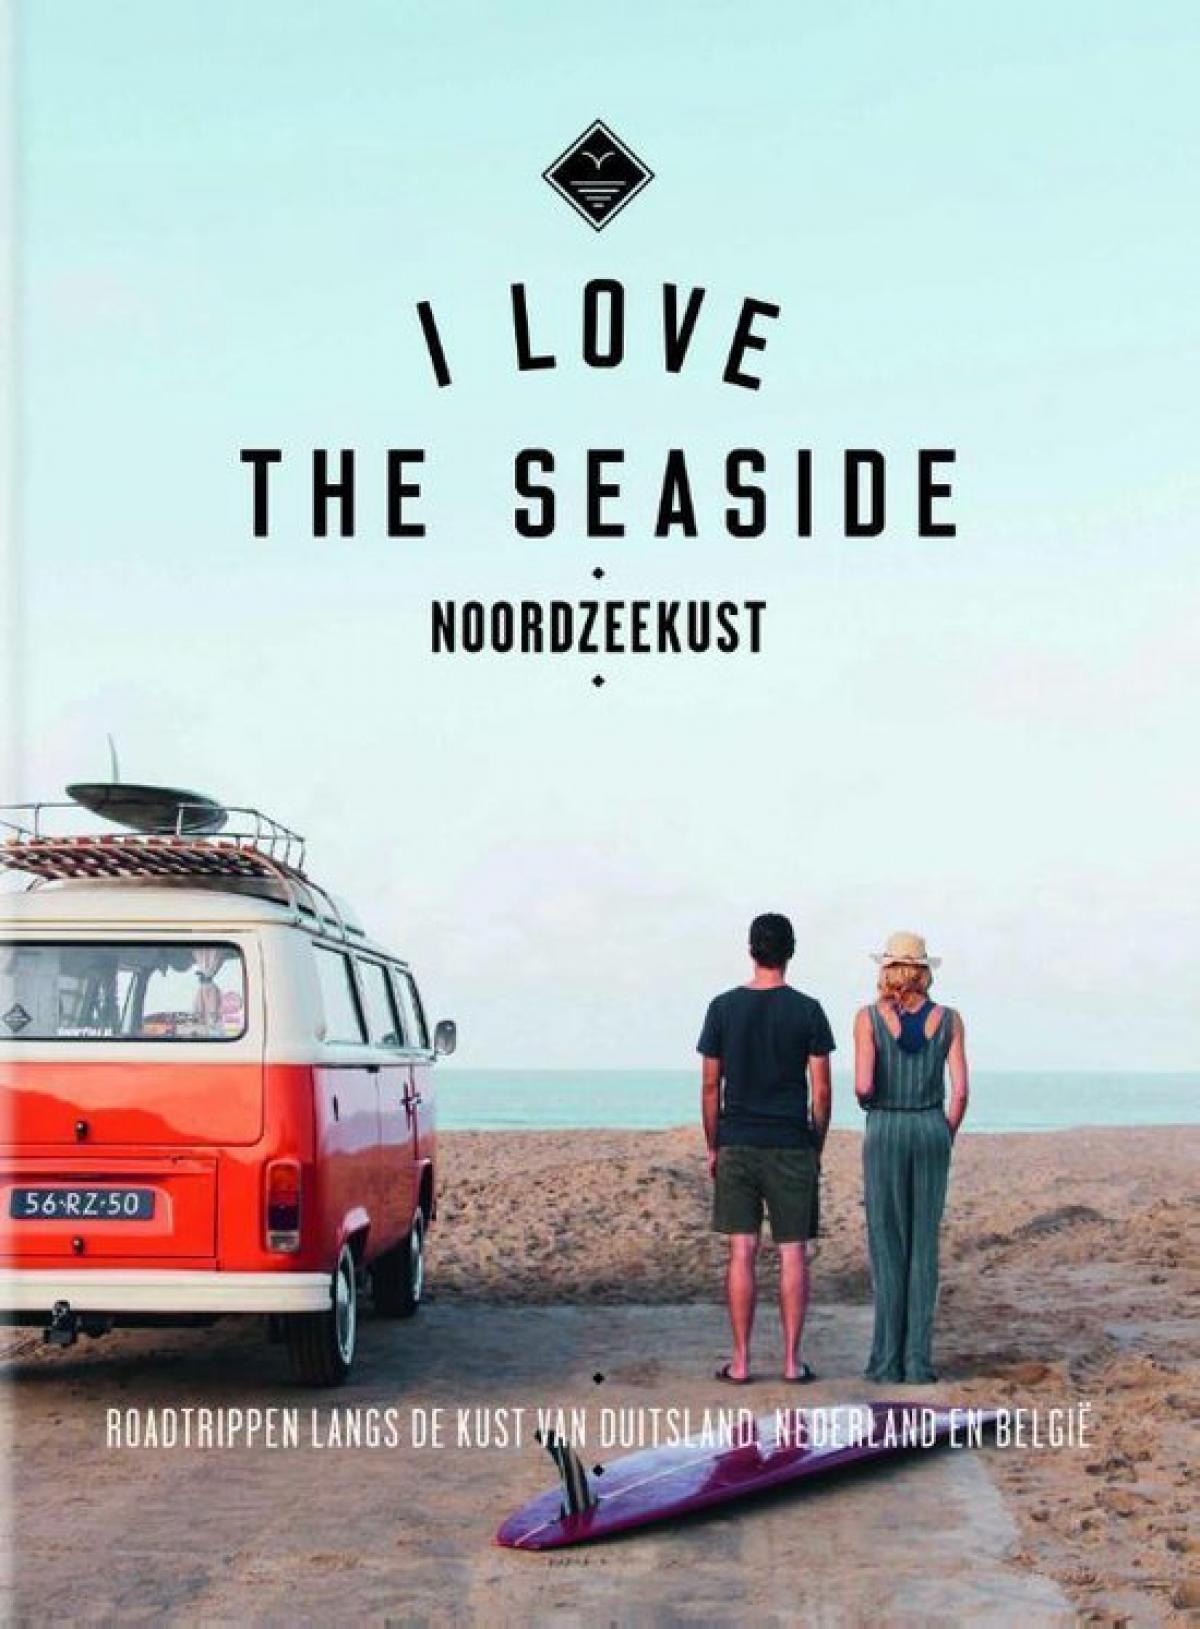 I Love the Seaside - Noordzeekust, Alexandra Gossink & Geert-Jan Middelkoop